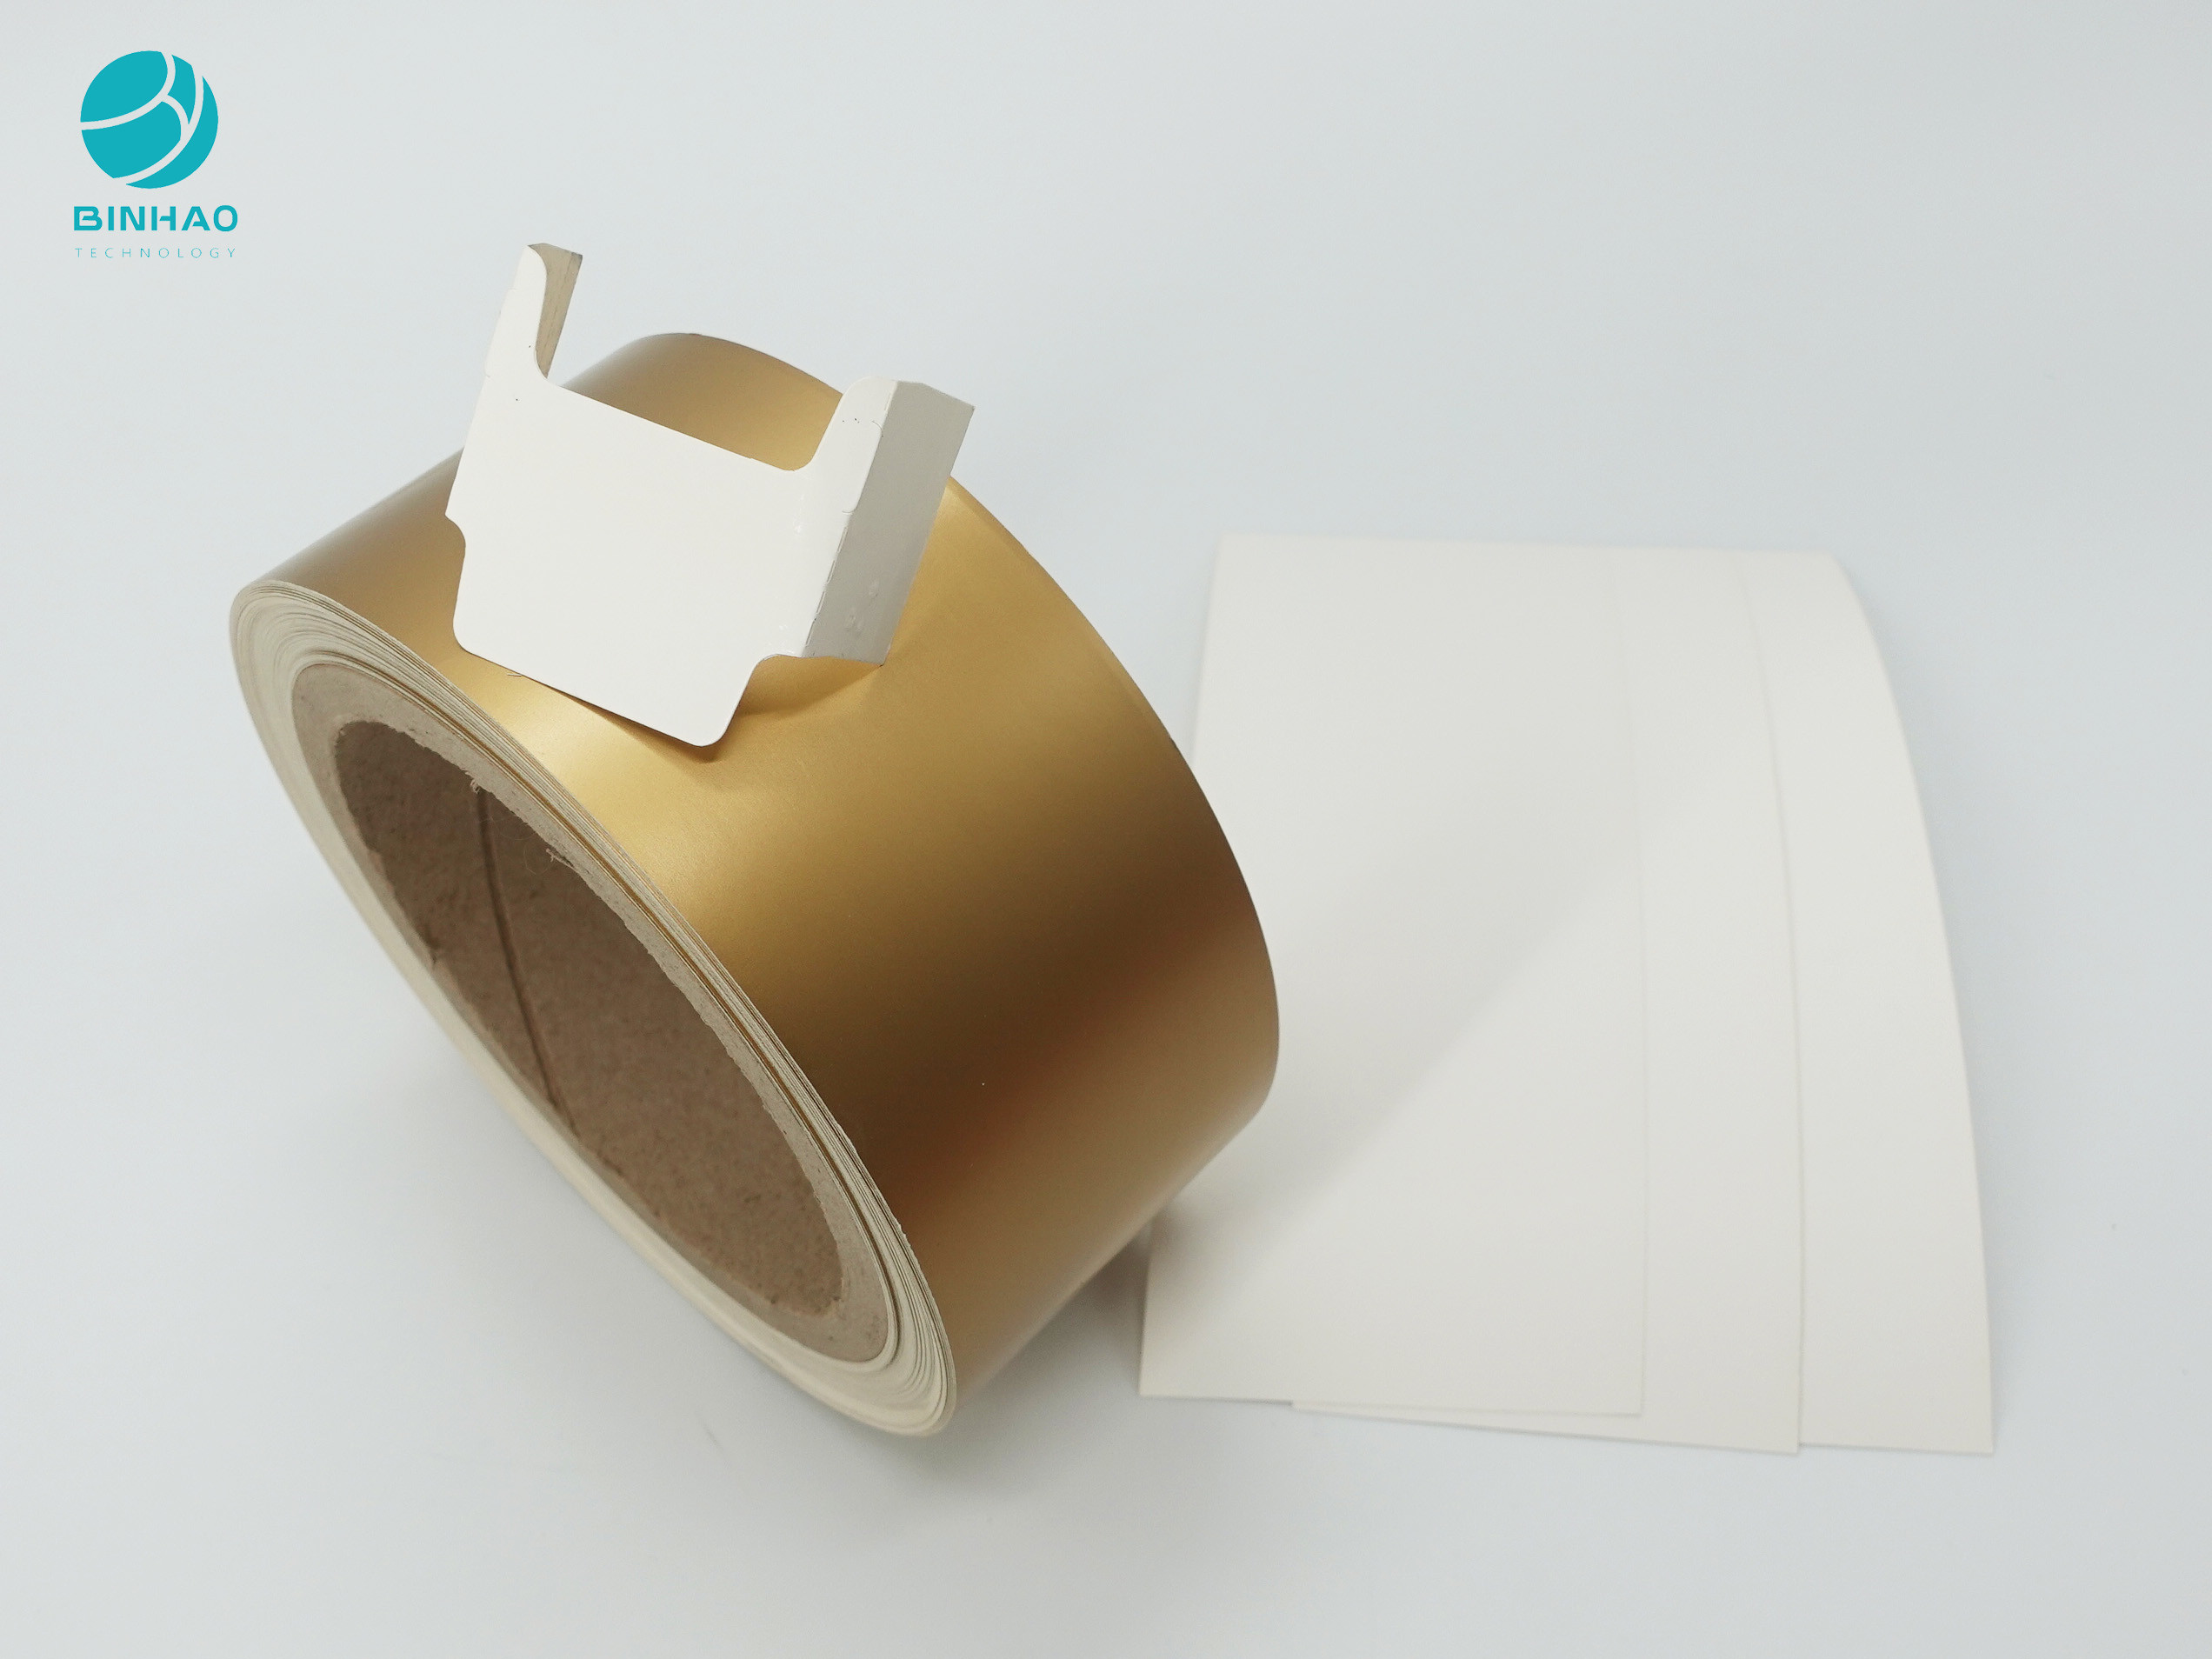 papier de carton de 95mm Matt Gold Coated Inner Frame pour le paquet de porte-cigarettes